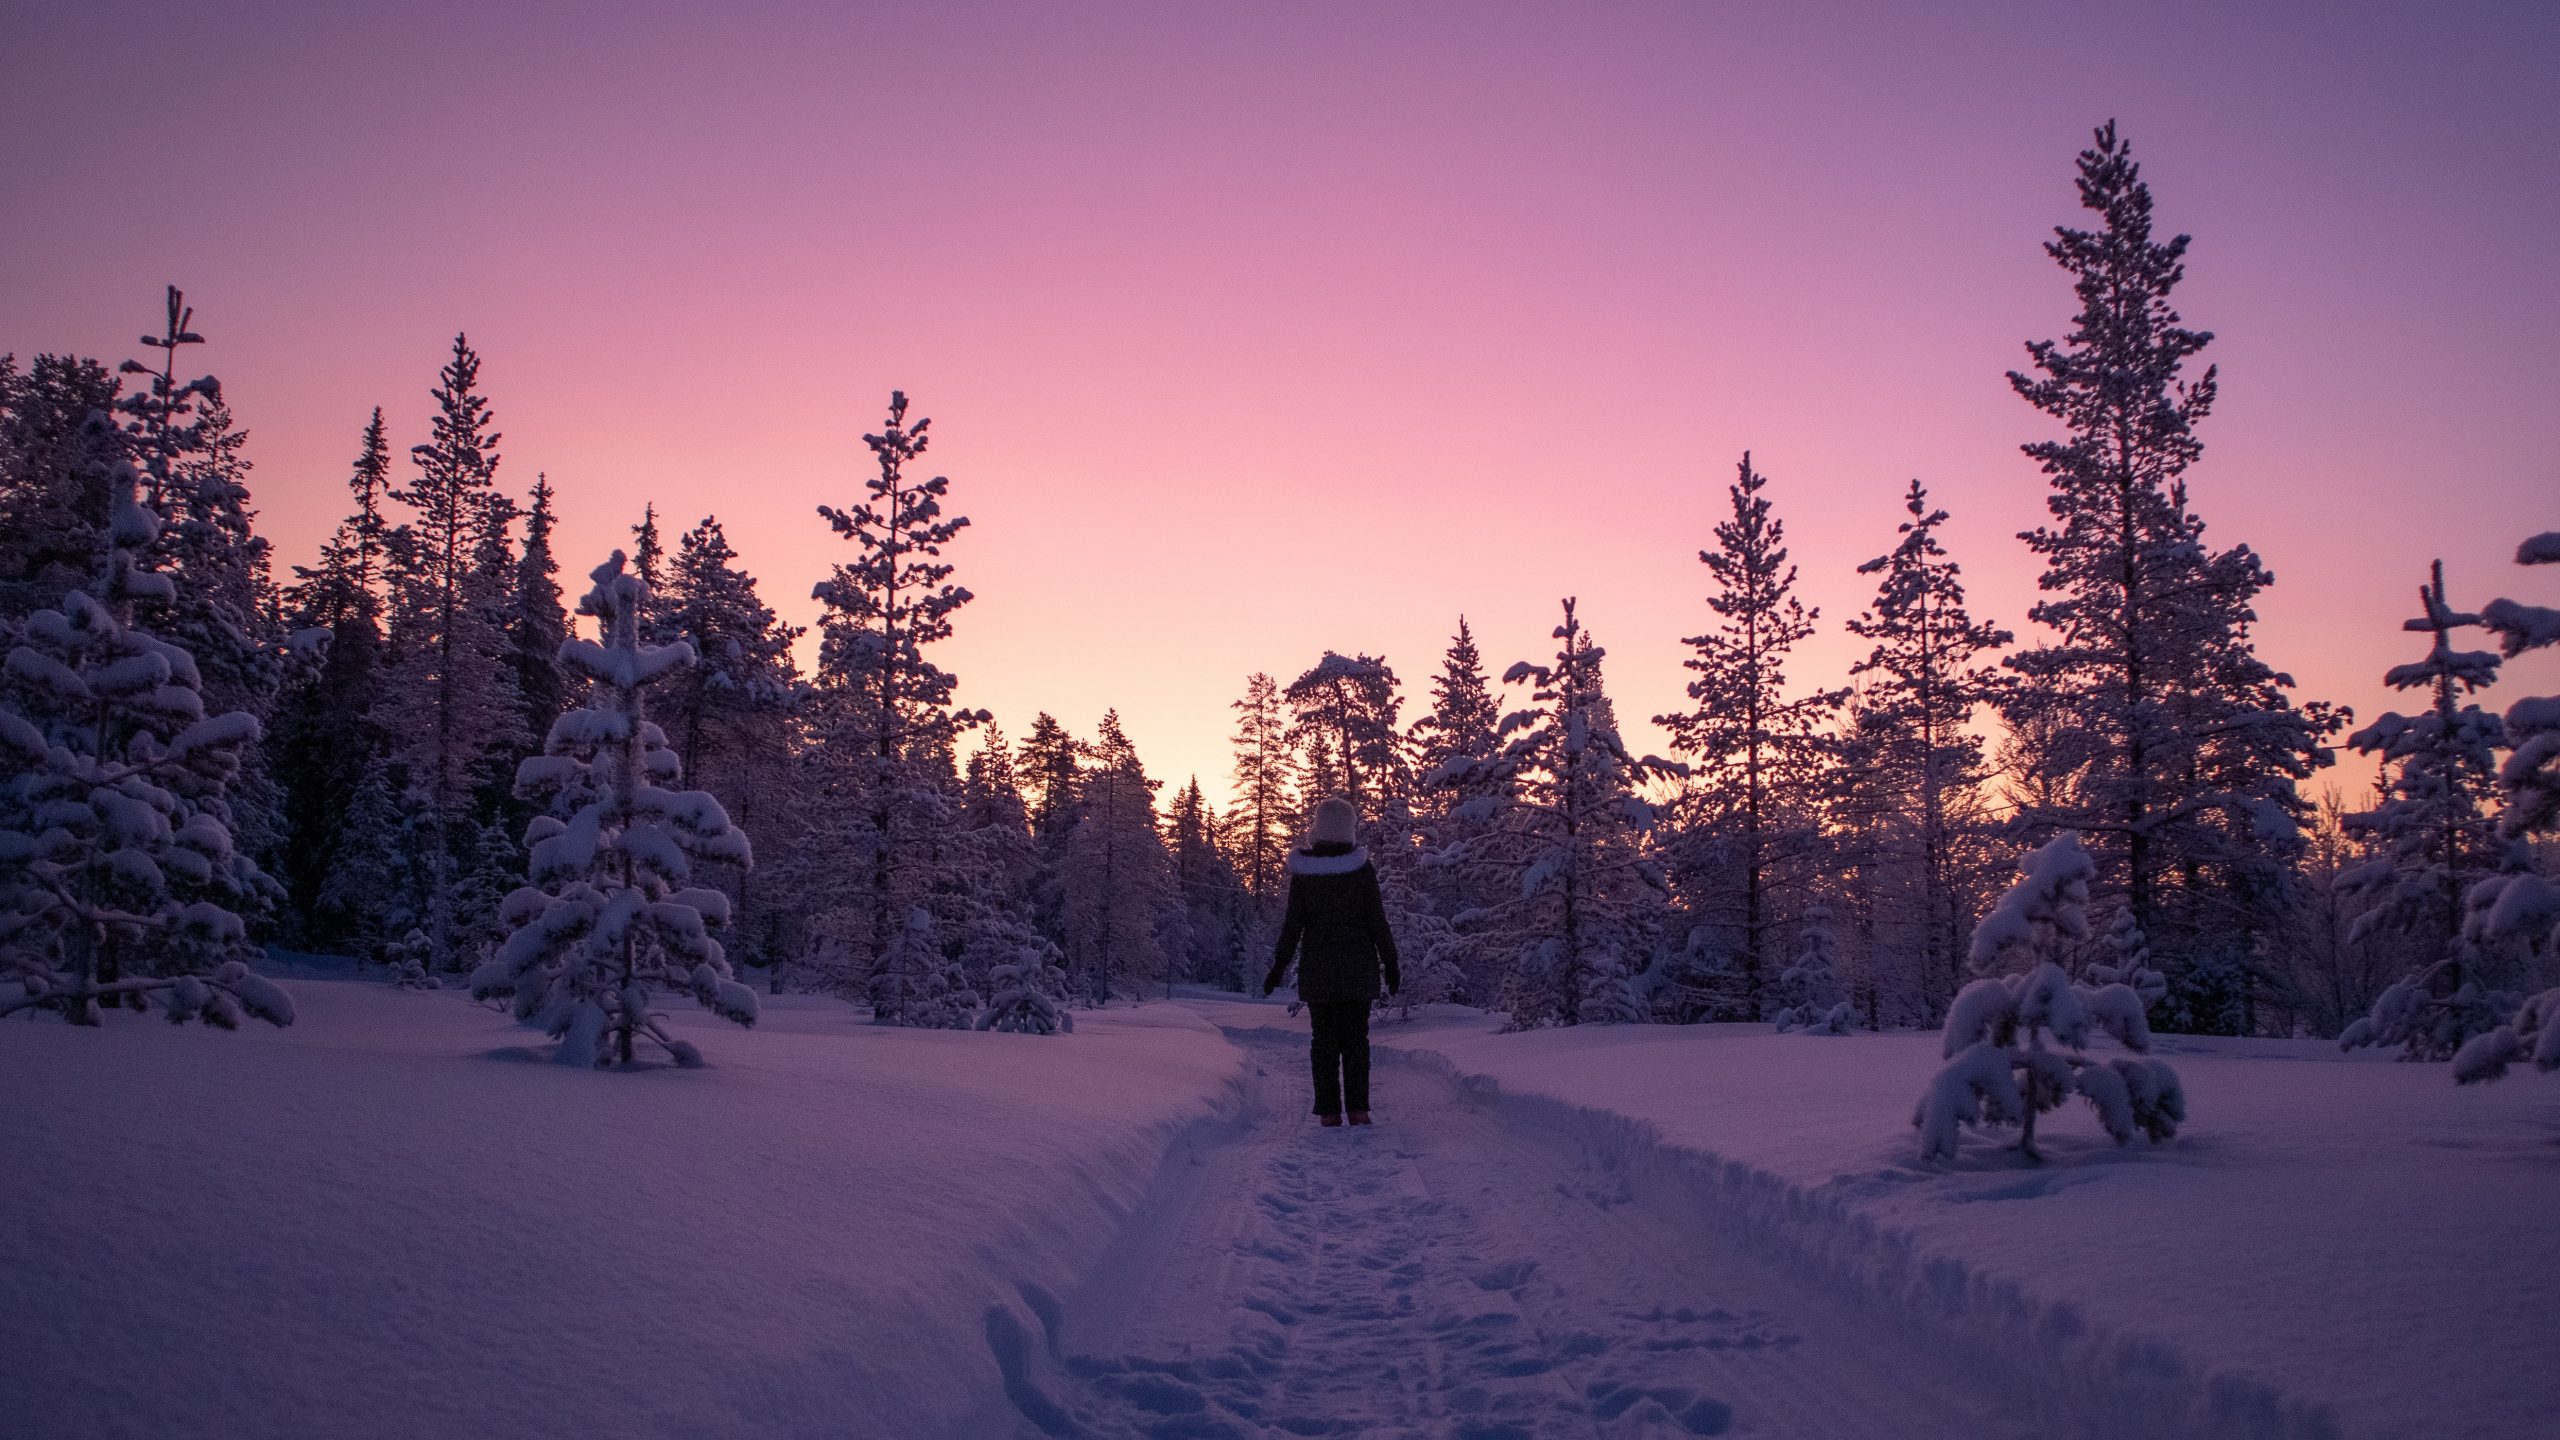 Anniina Olkkonen - Dream pink and purple moments in Salla Finnish Lapland winter